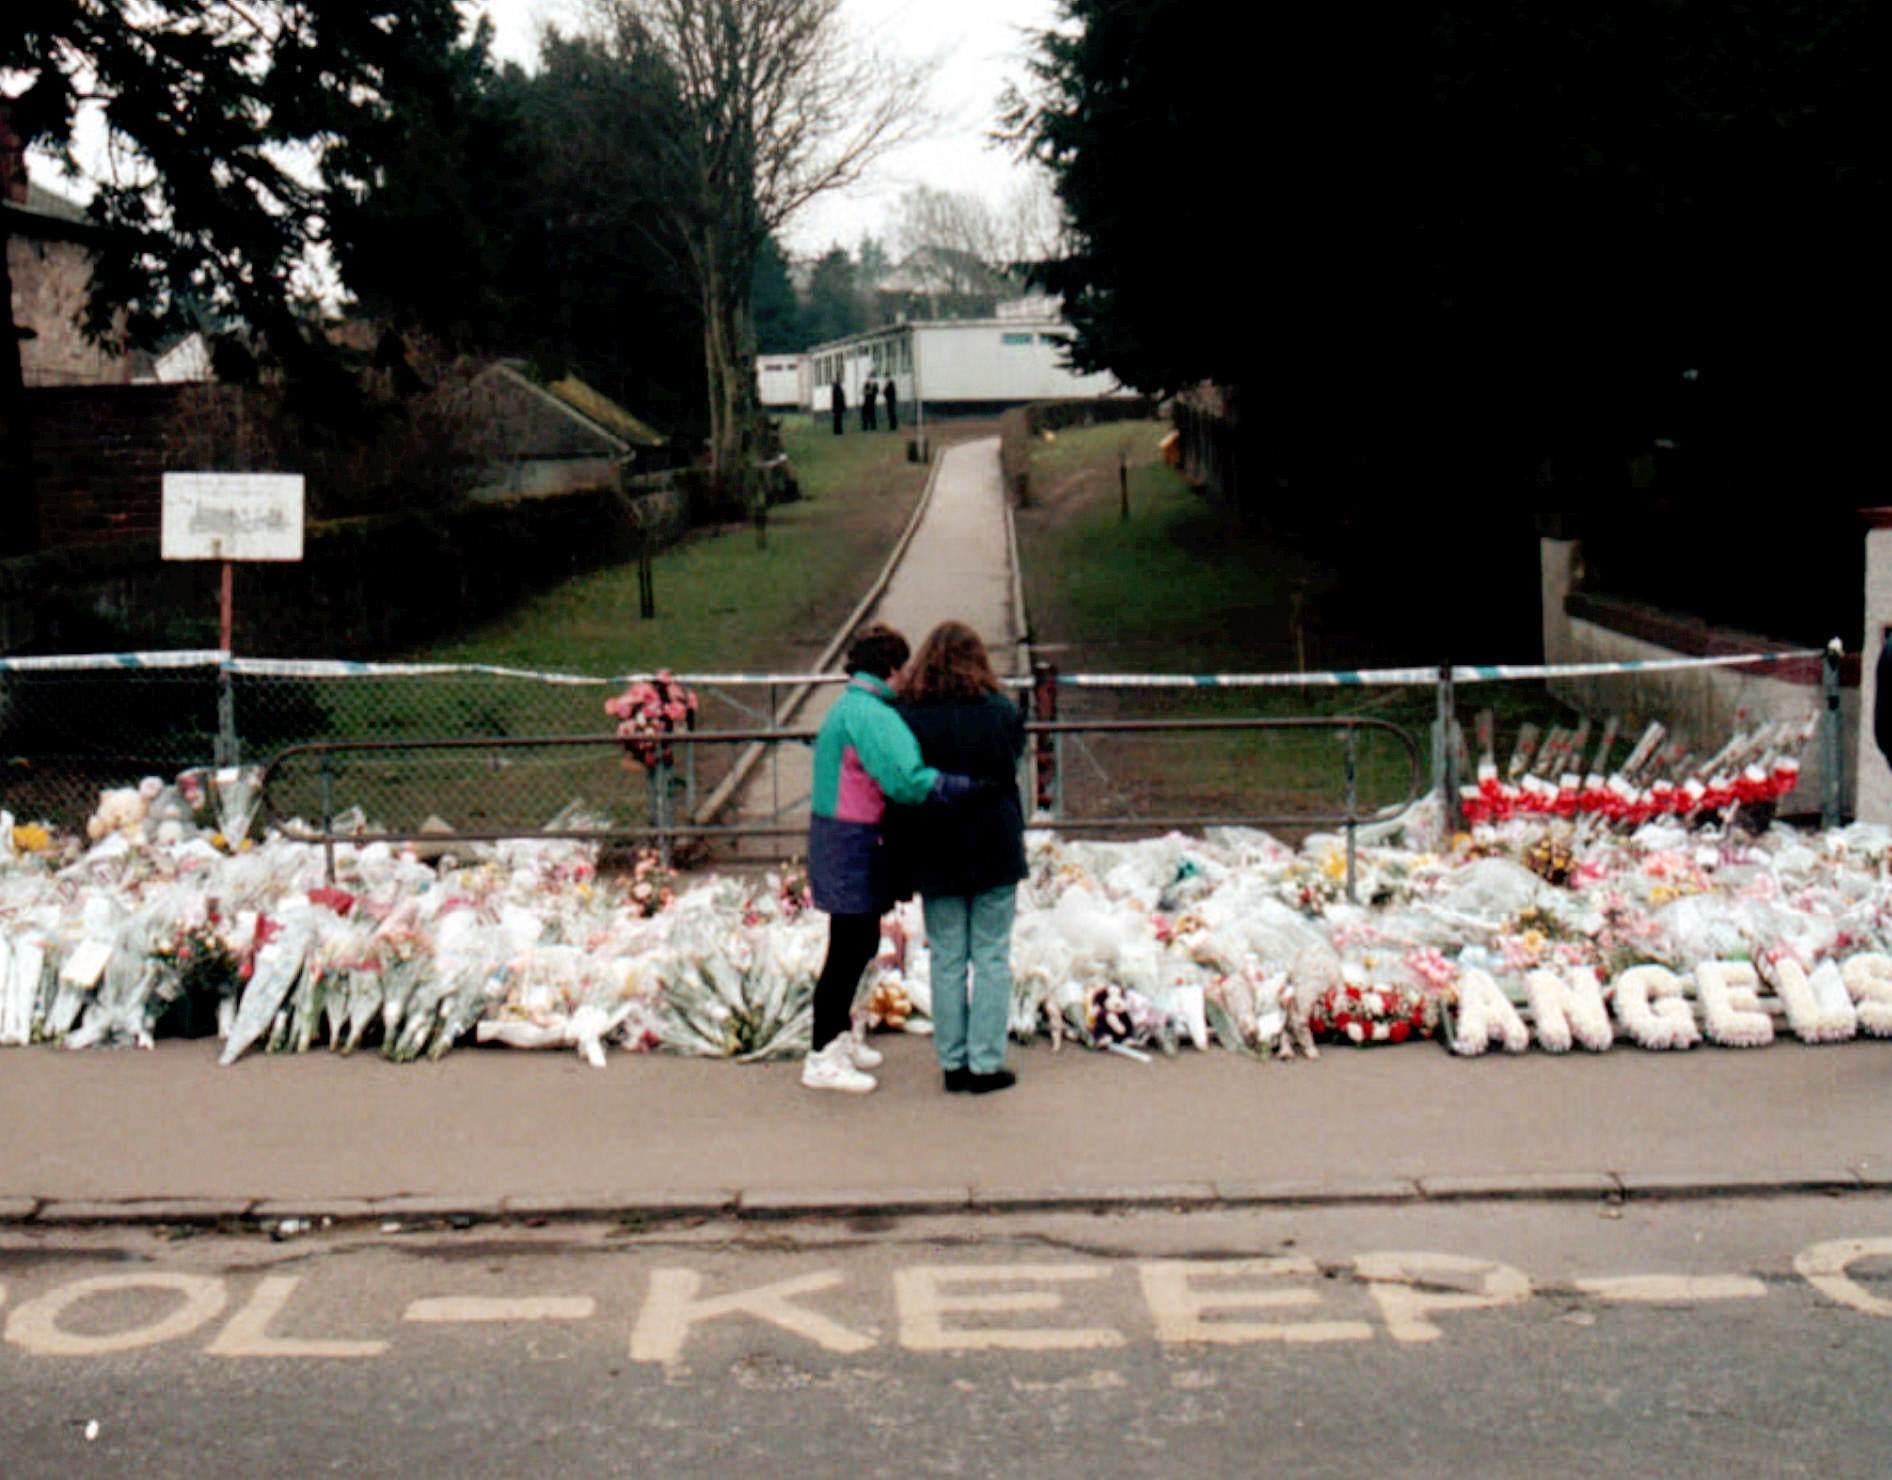 1996 mördades 16 skolbarn av Thomas Hamilton i Dunblane i Skottland. 